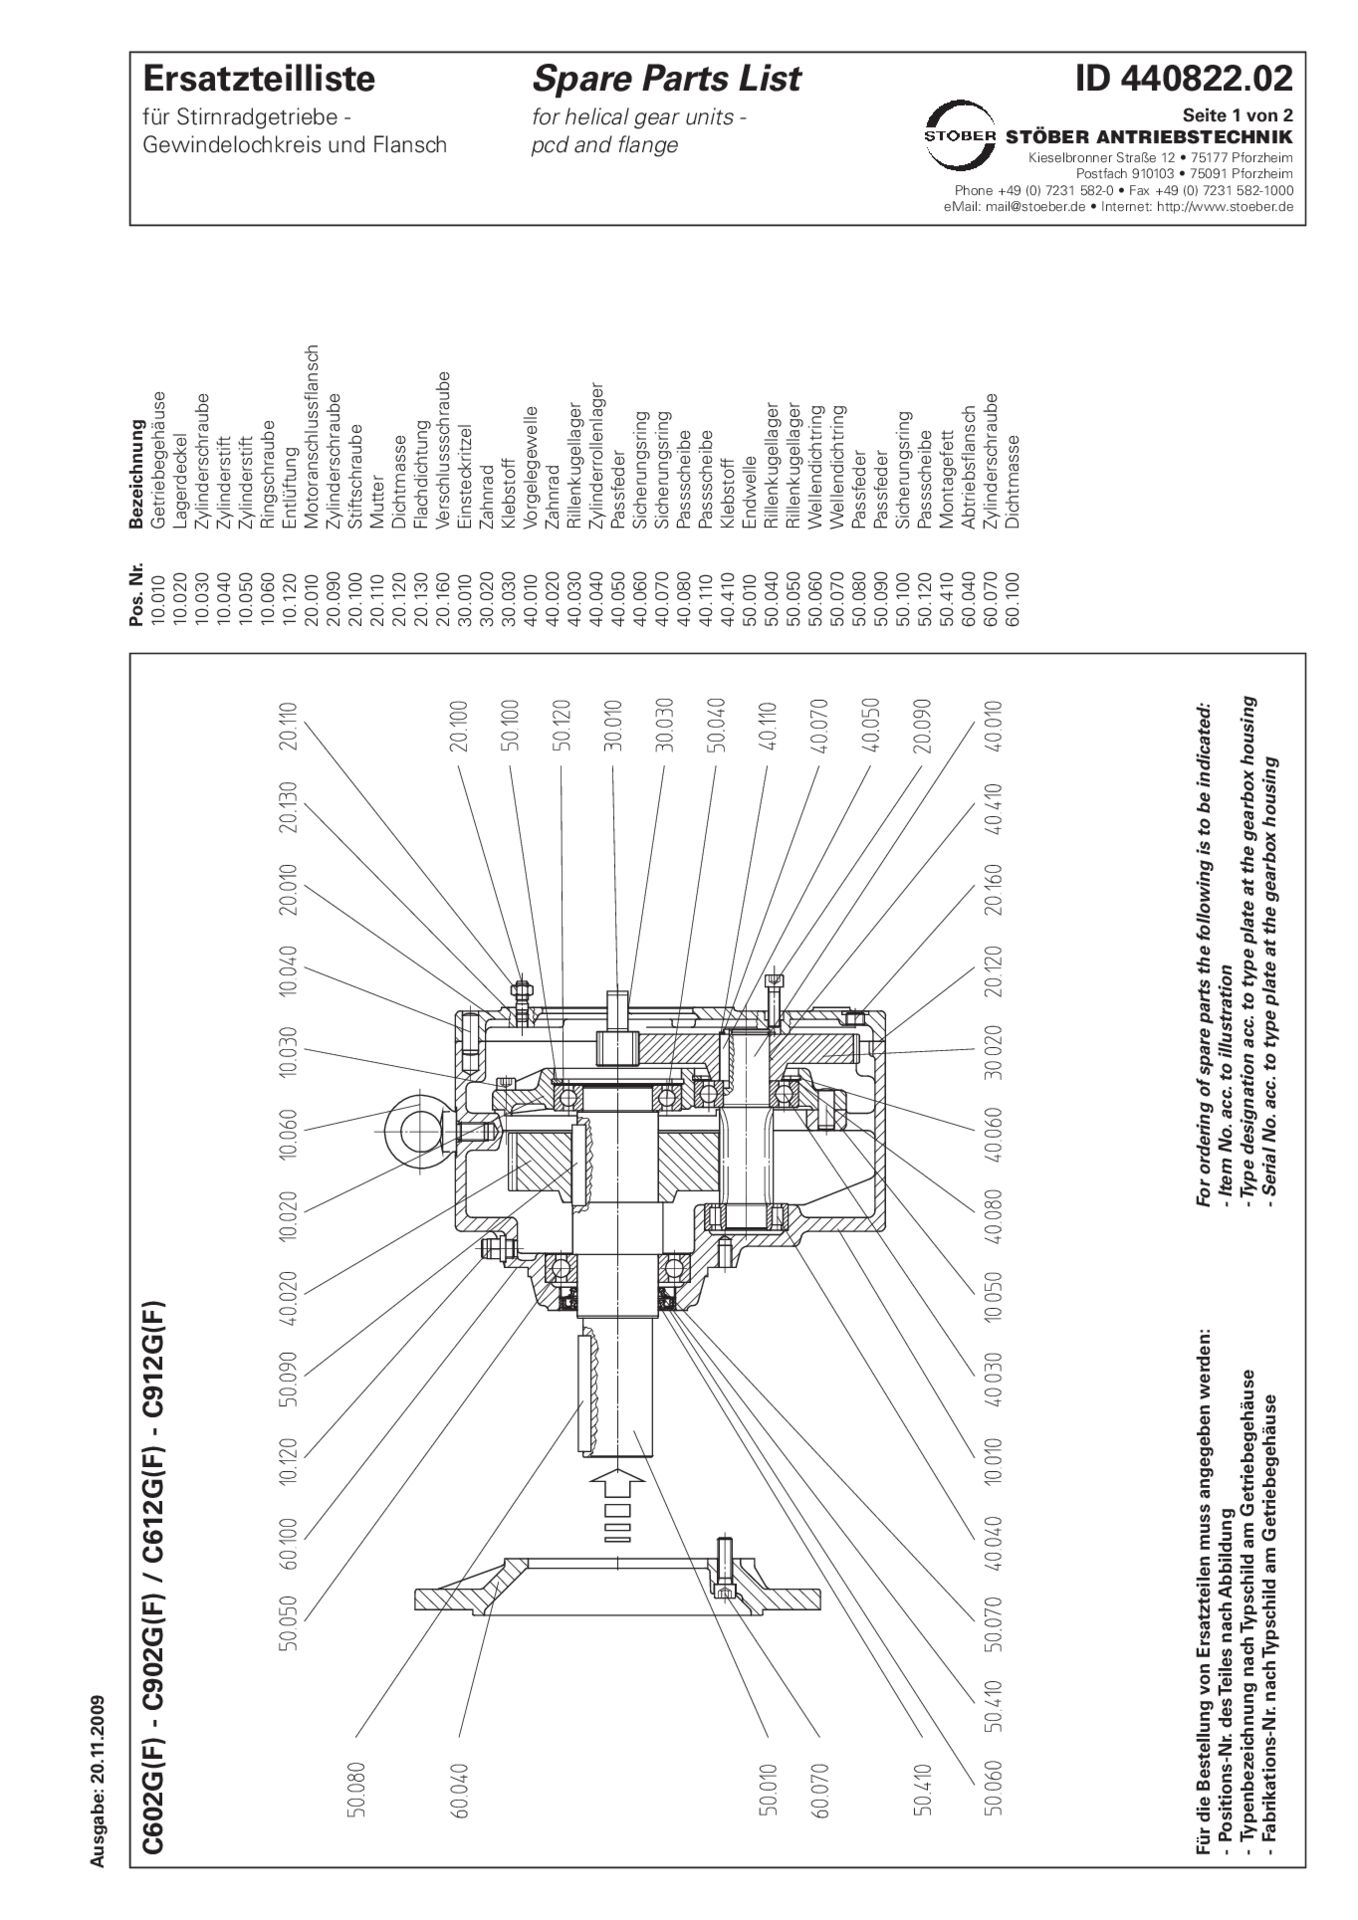 Replacement parts list helical gear units C602 C612 C702 C712 C802 C812 C902 C912 G F